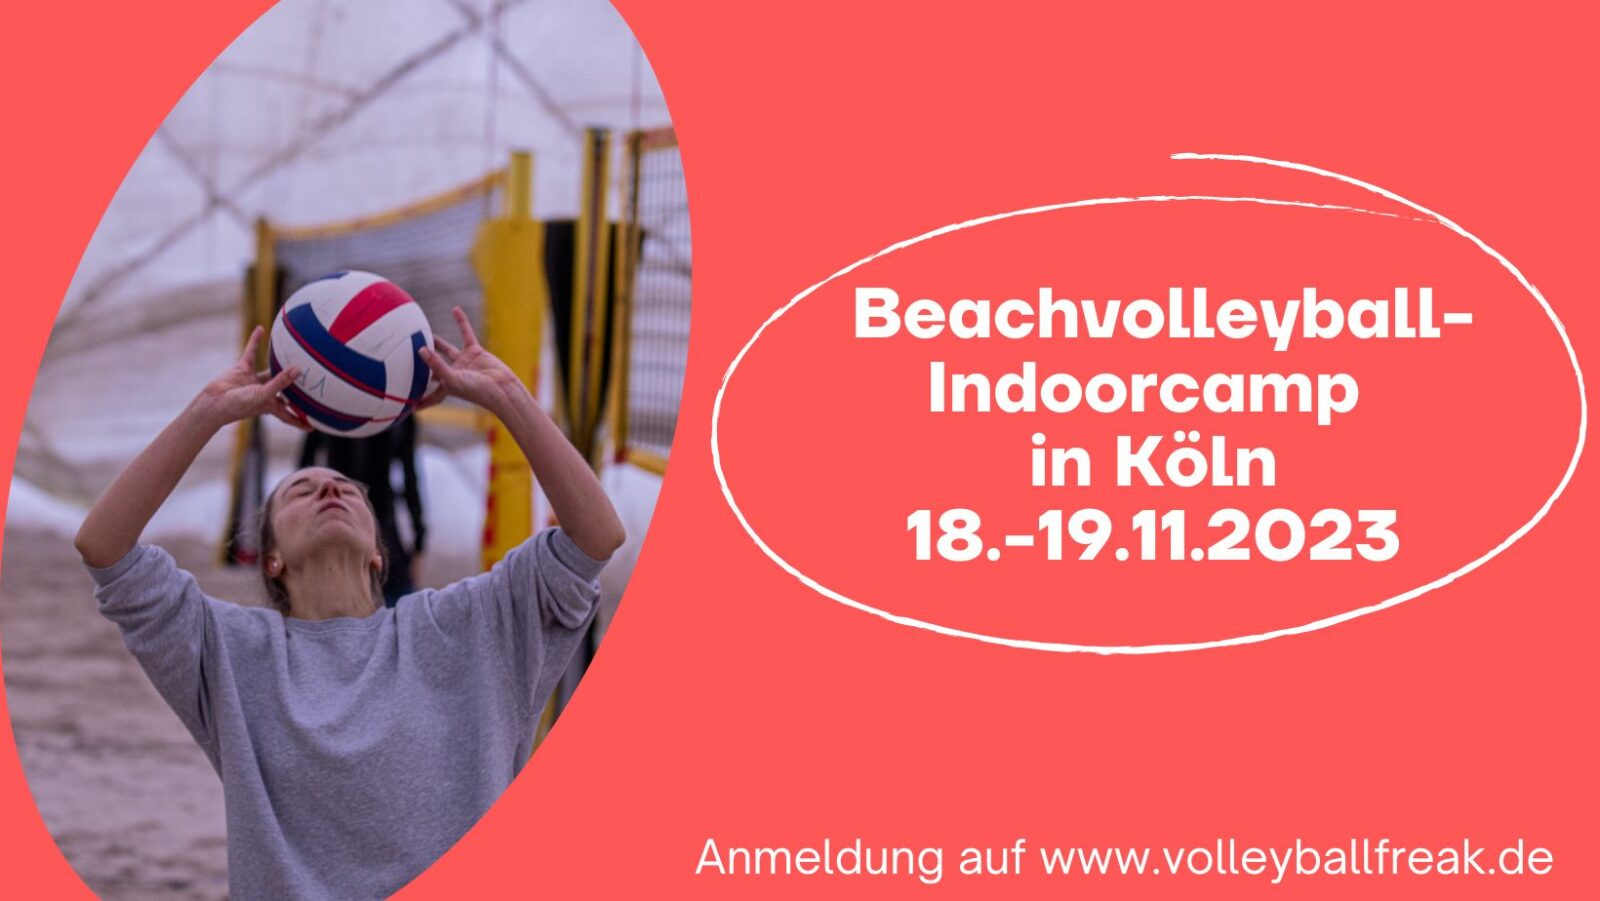 Beachvolleyball-Indoorcamp 18.-19.11.2023 in Köln